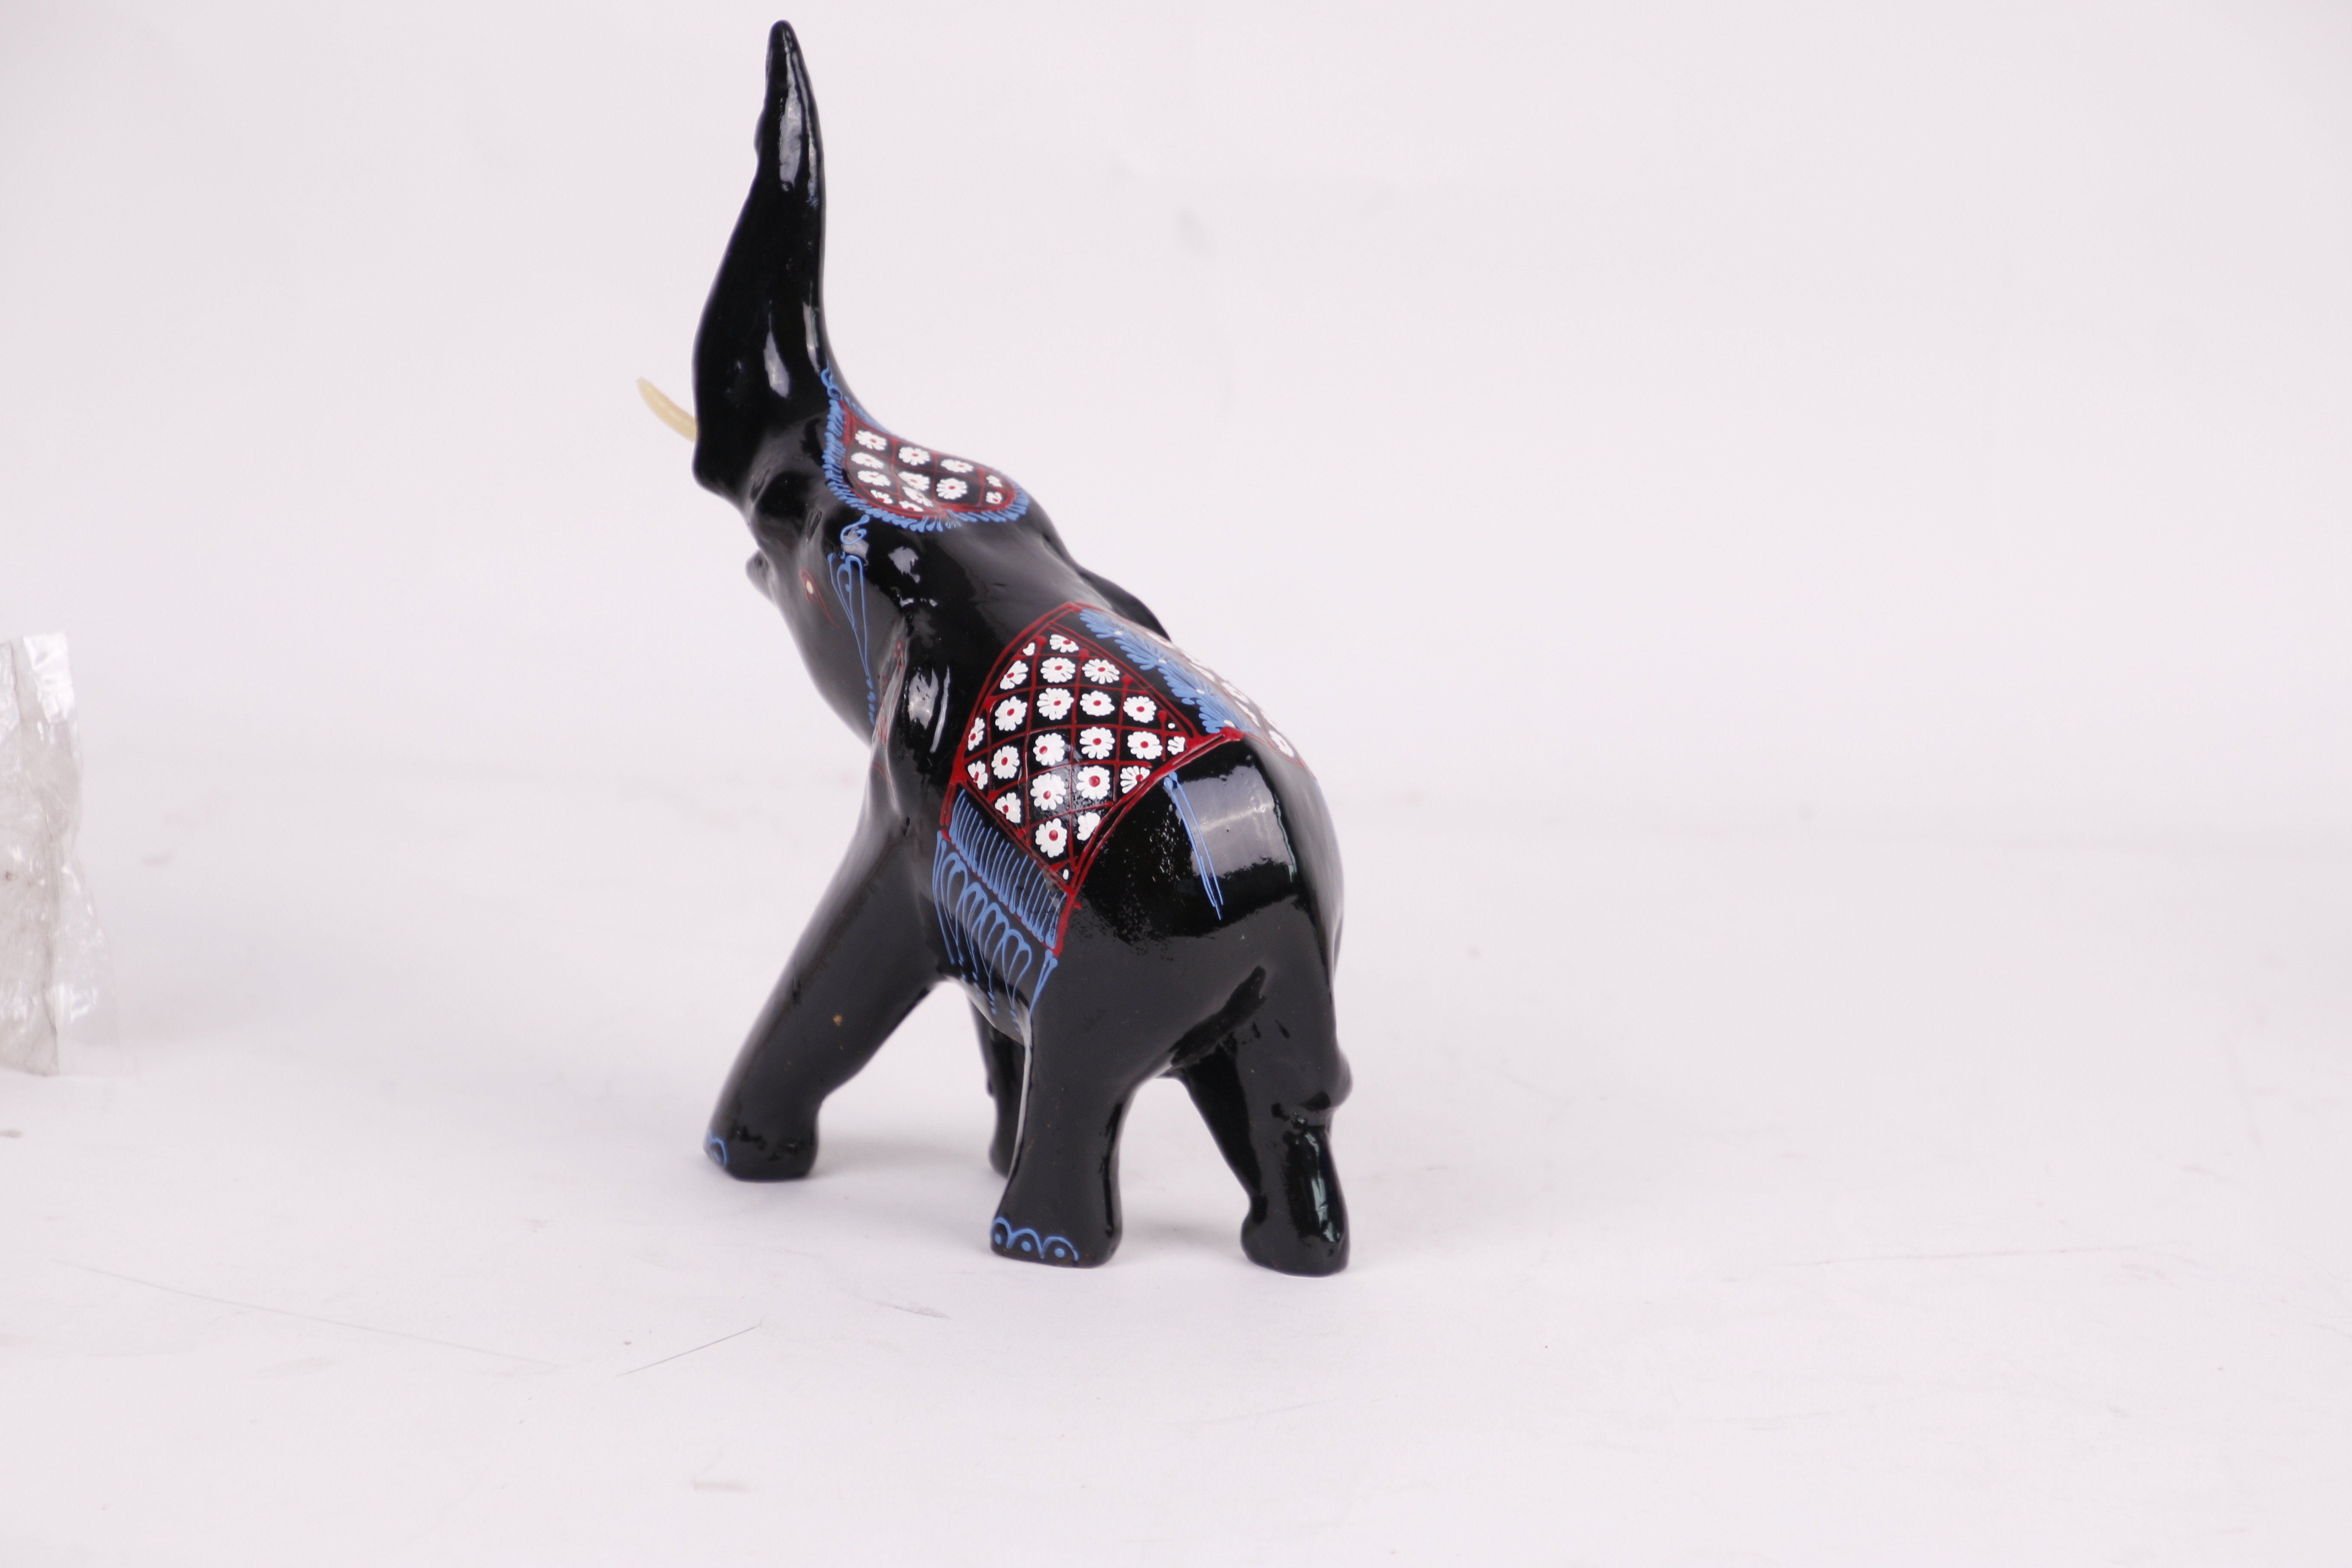 Deko Figur Elefant 18,5cm Afrika-Dekoration Elefanten-Figur